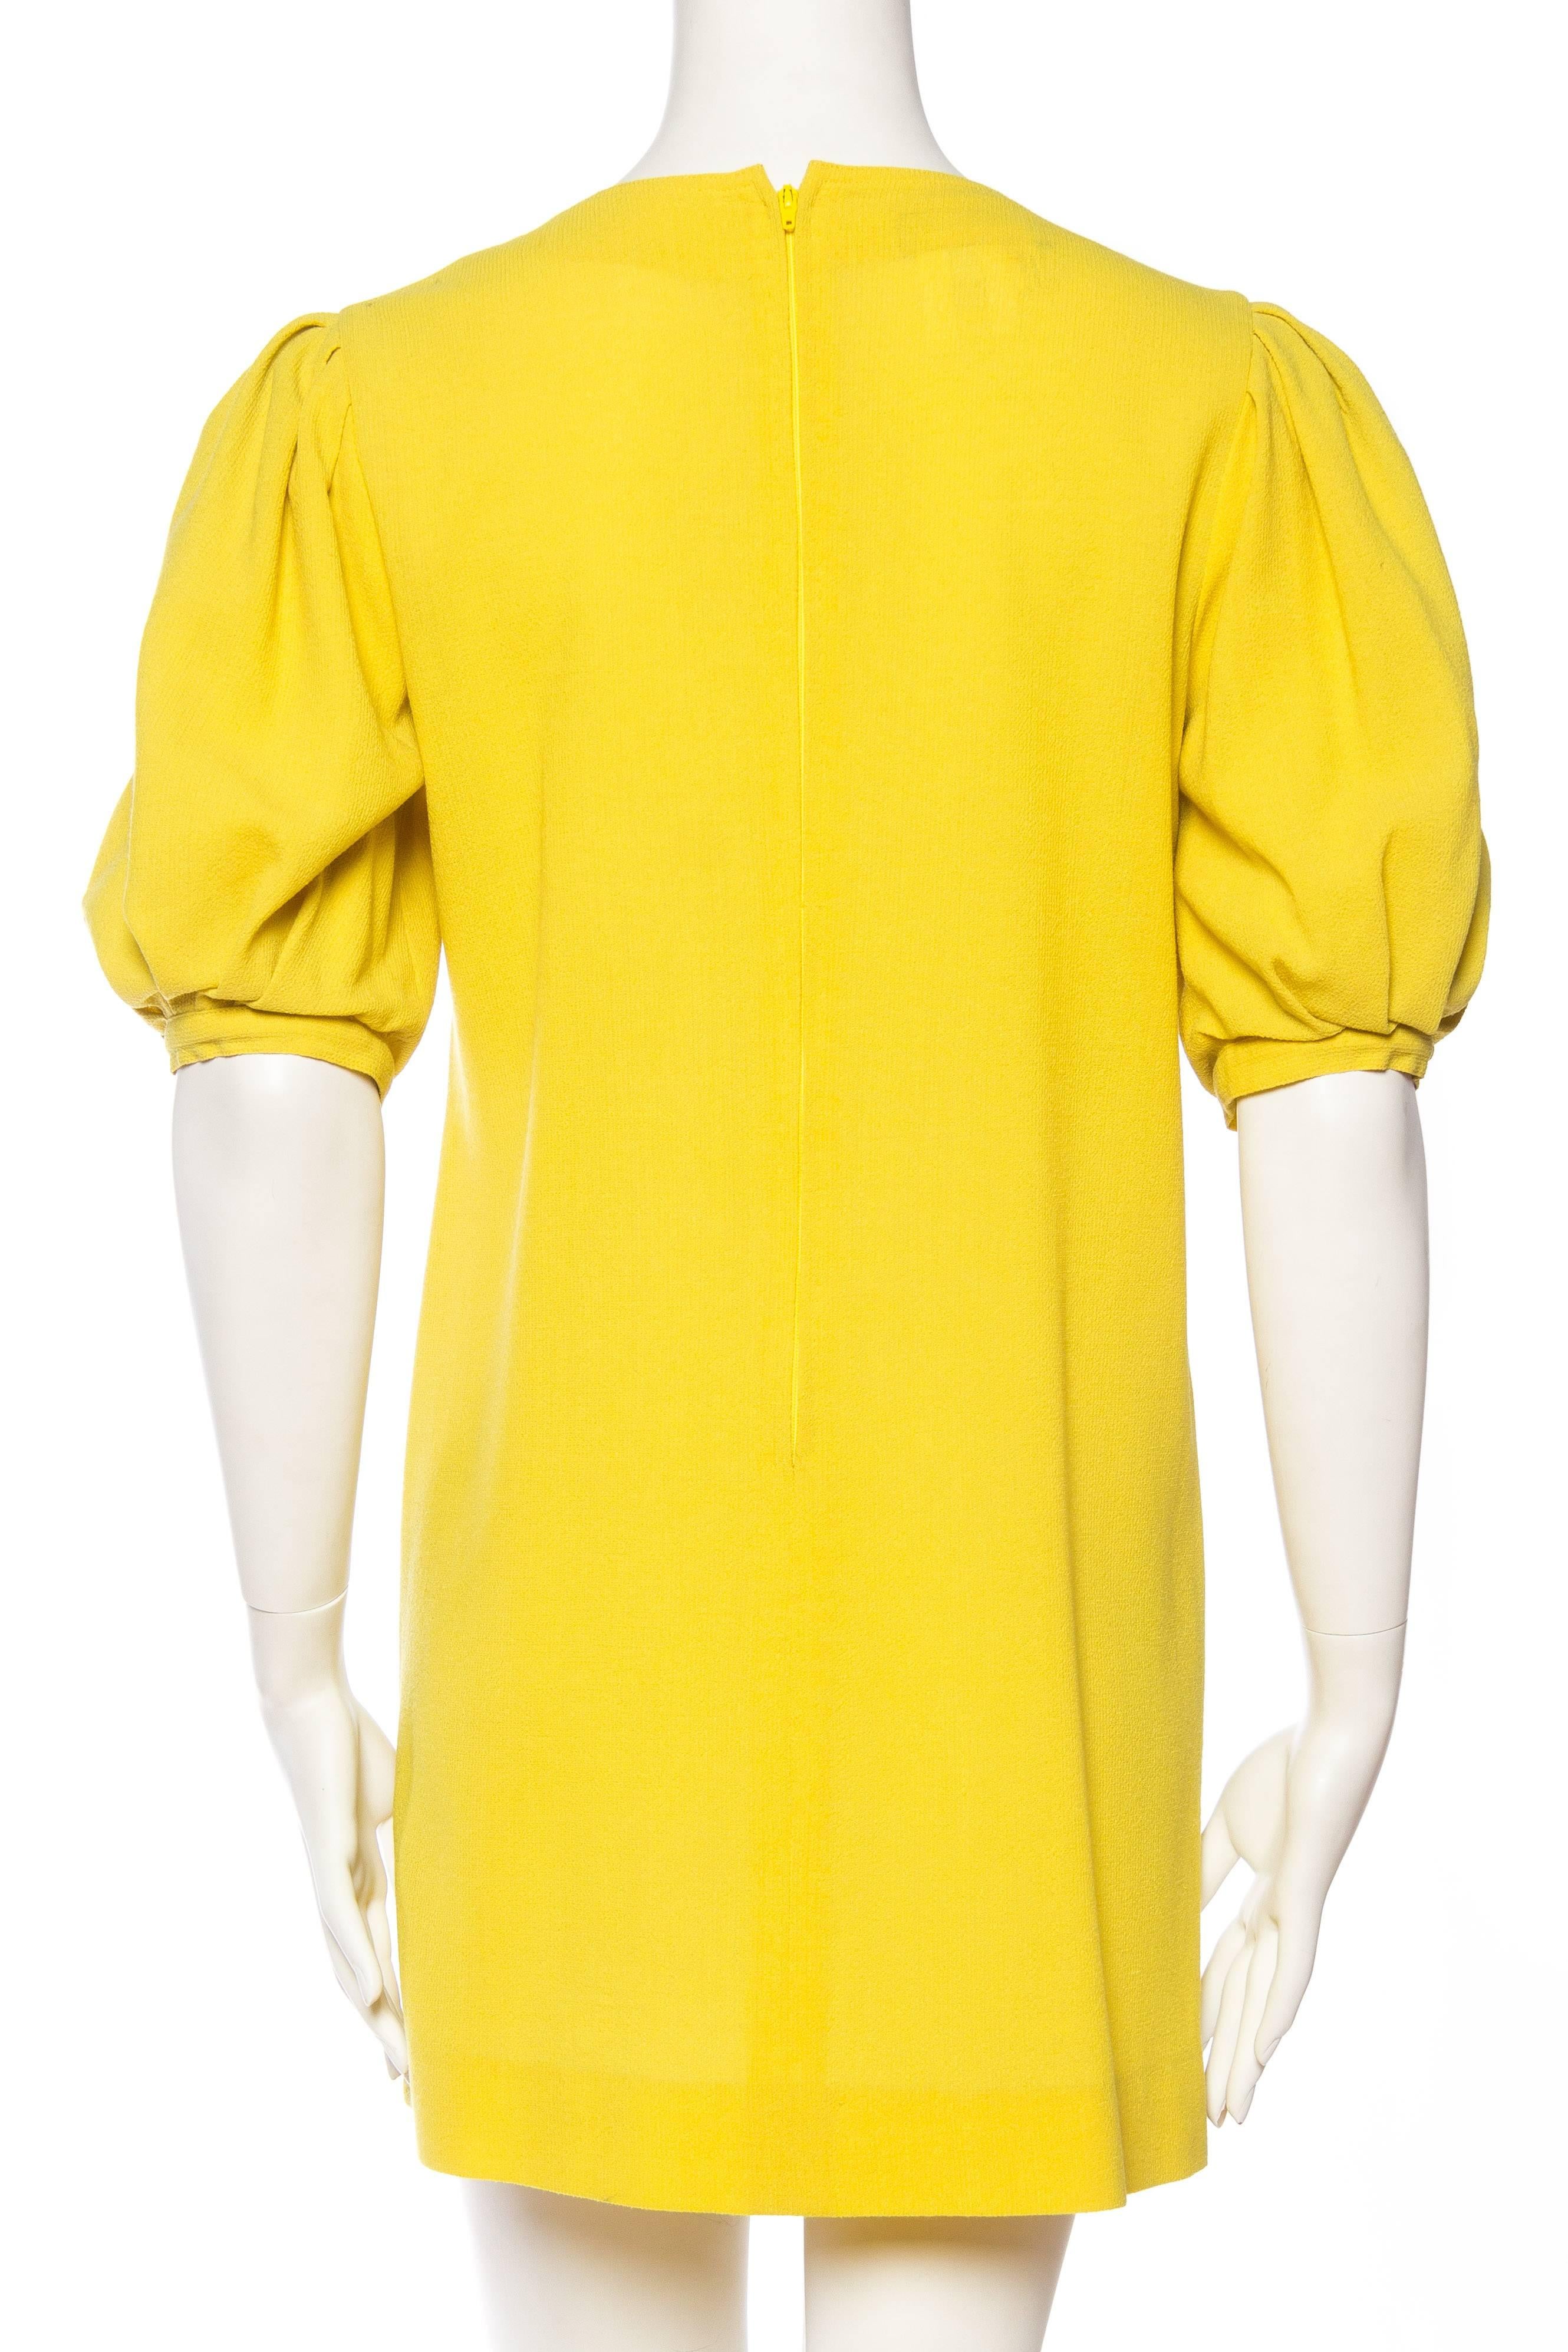 Jean Muir Lightweight Mod Yellow Dress 2